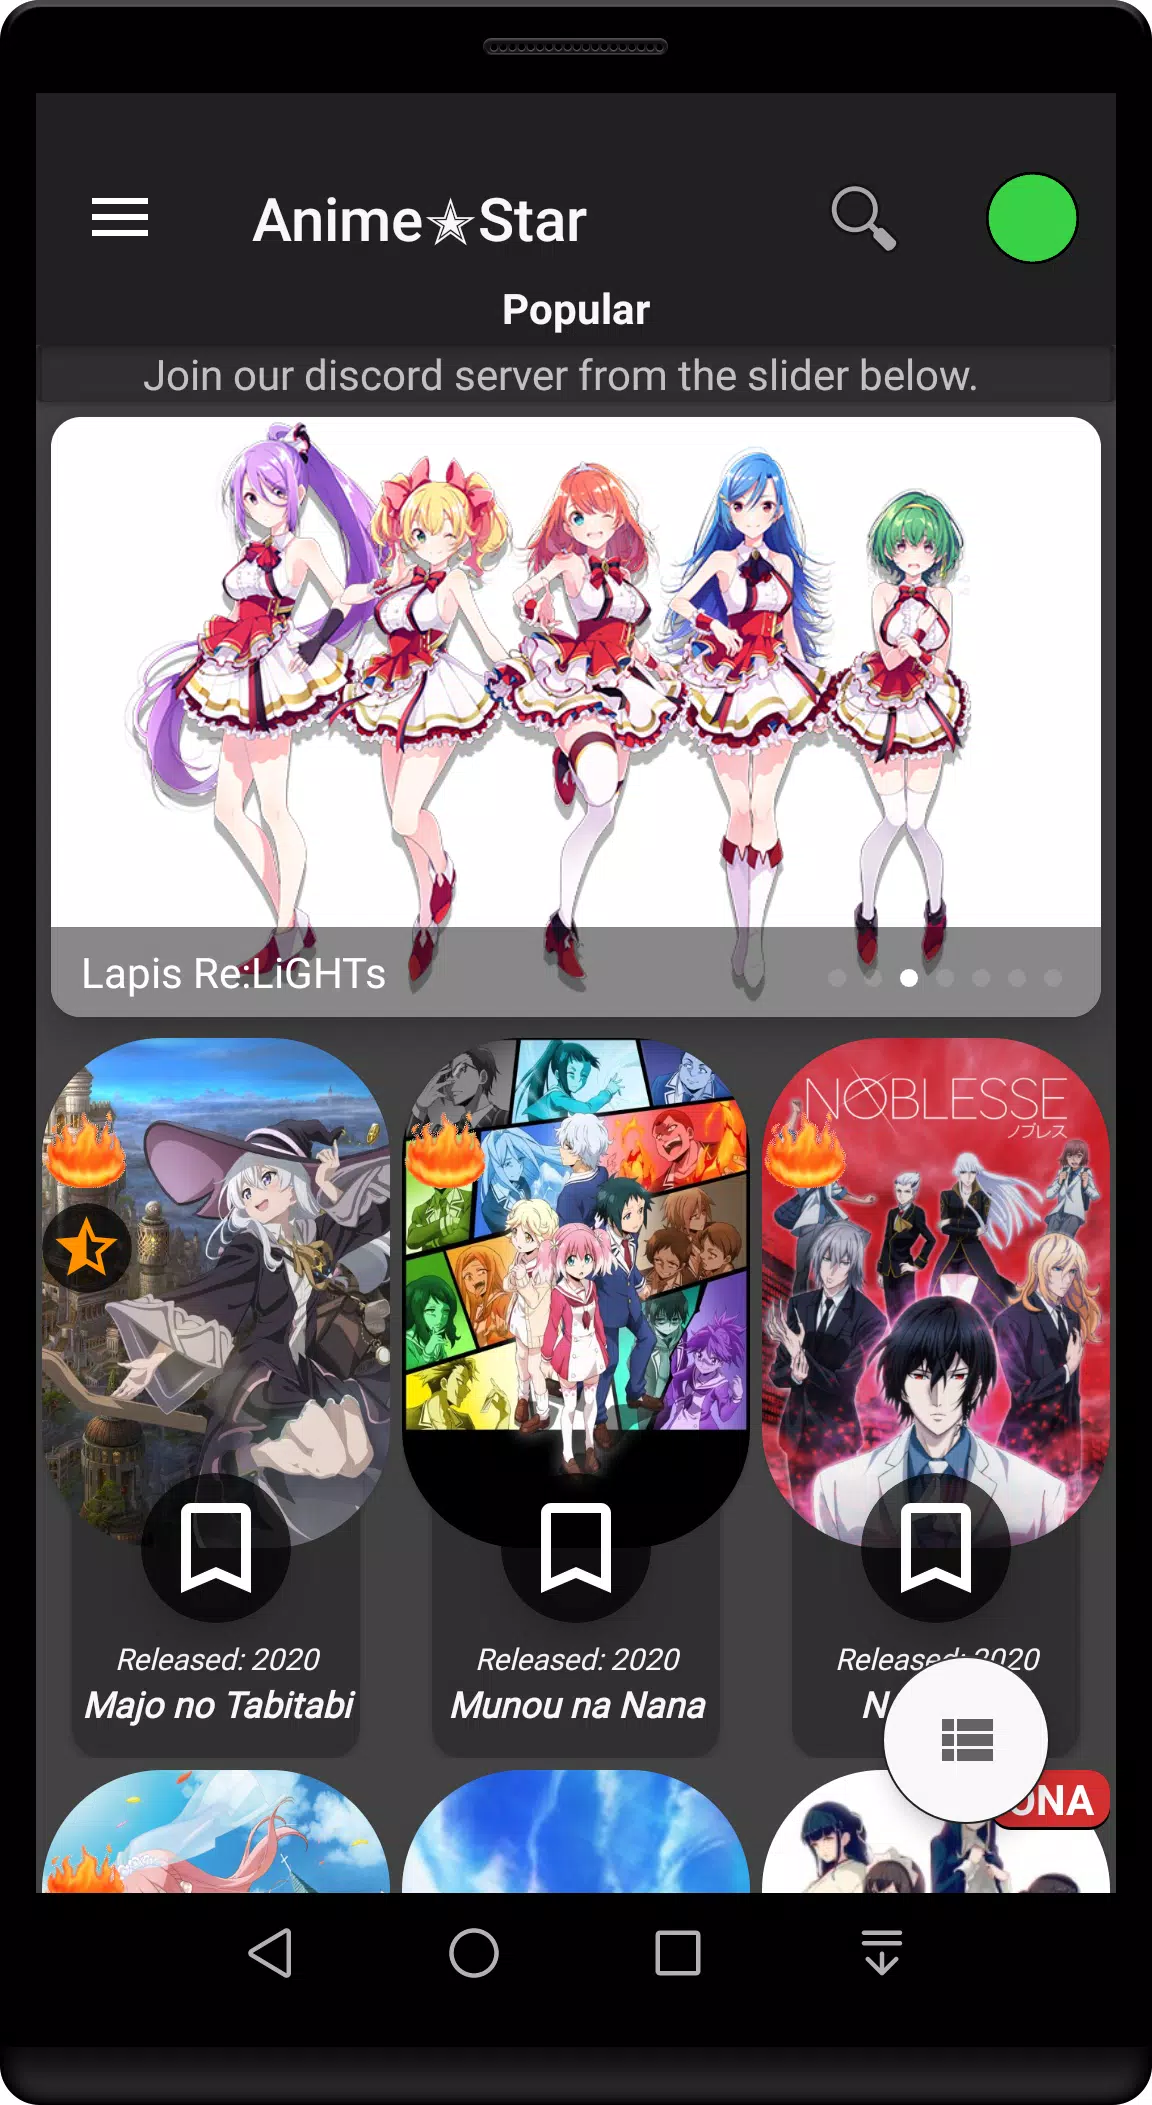 AniTour - Animes Online 3.0-beta1 APK - com.app.anitour APK Download